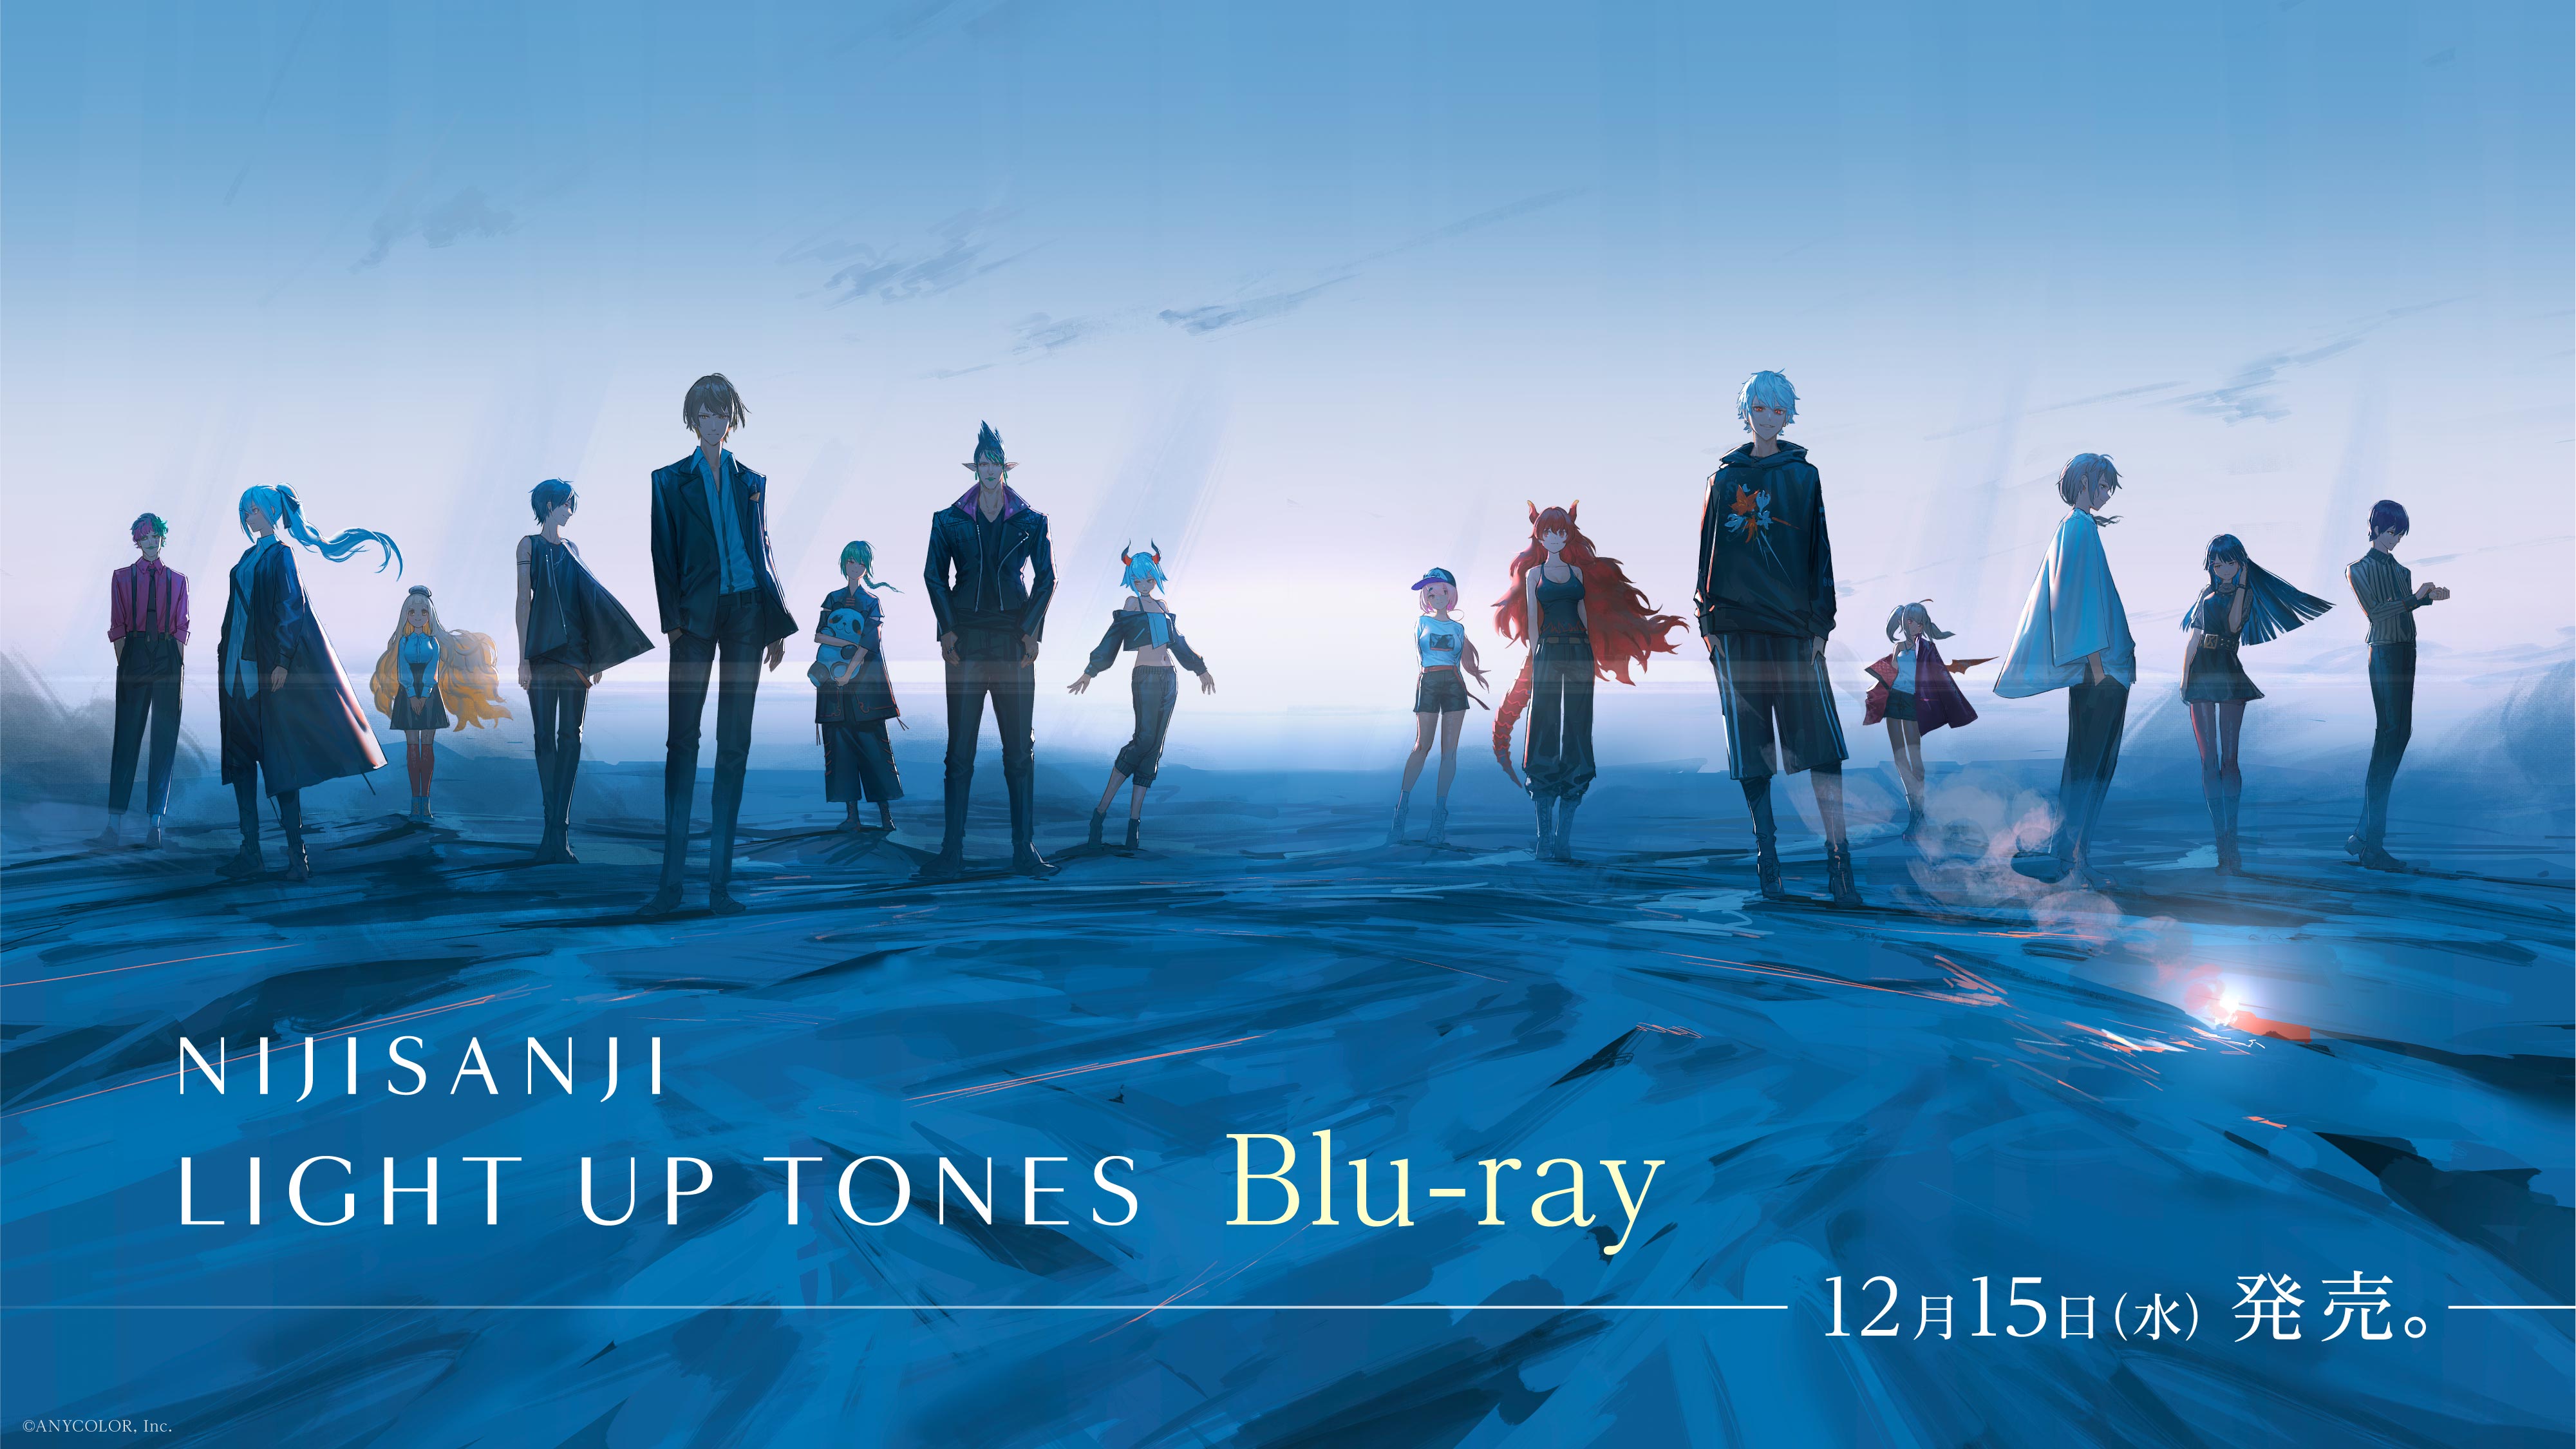 にじさんじ “LIGHT UP TONES”」Blu-ray Disc 2021年12月15日(水)発売 